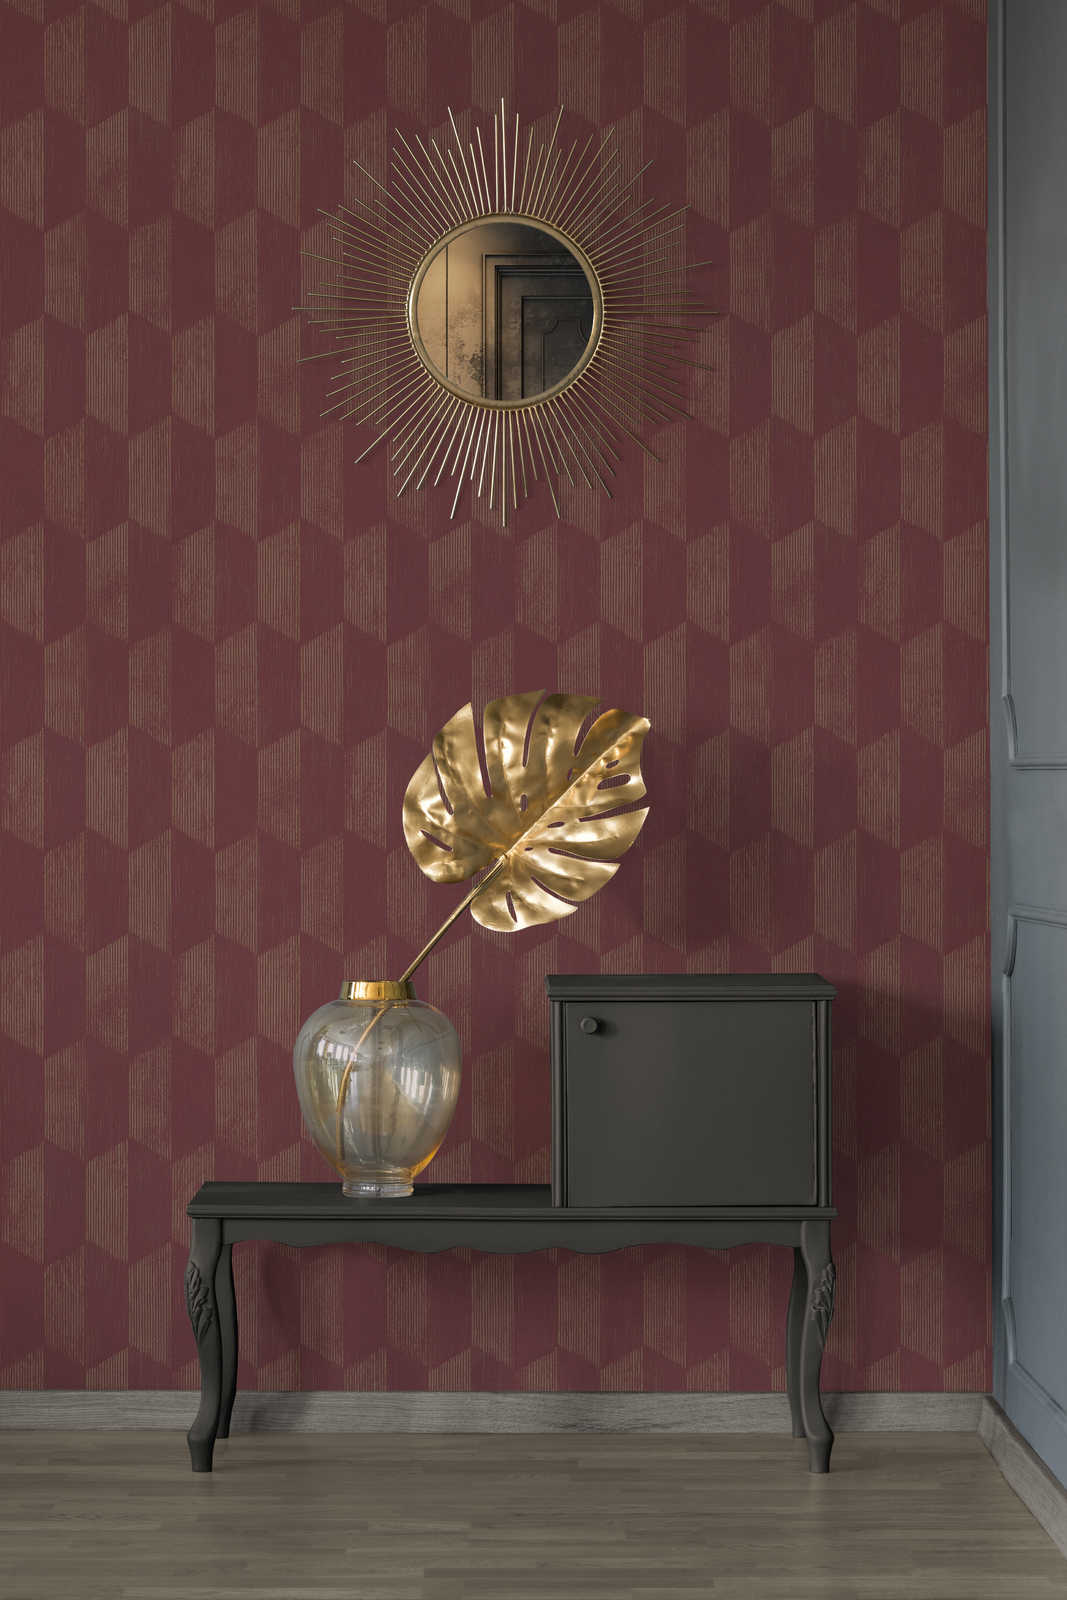             Textuurbehang met 3D grafisch patroon - metallic, rood
        